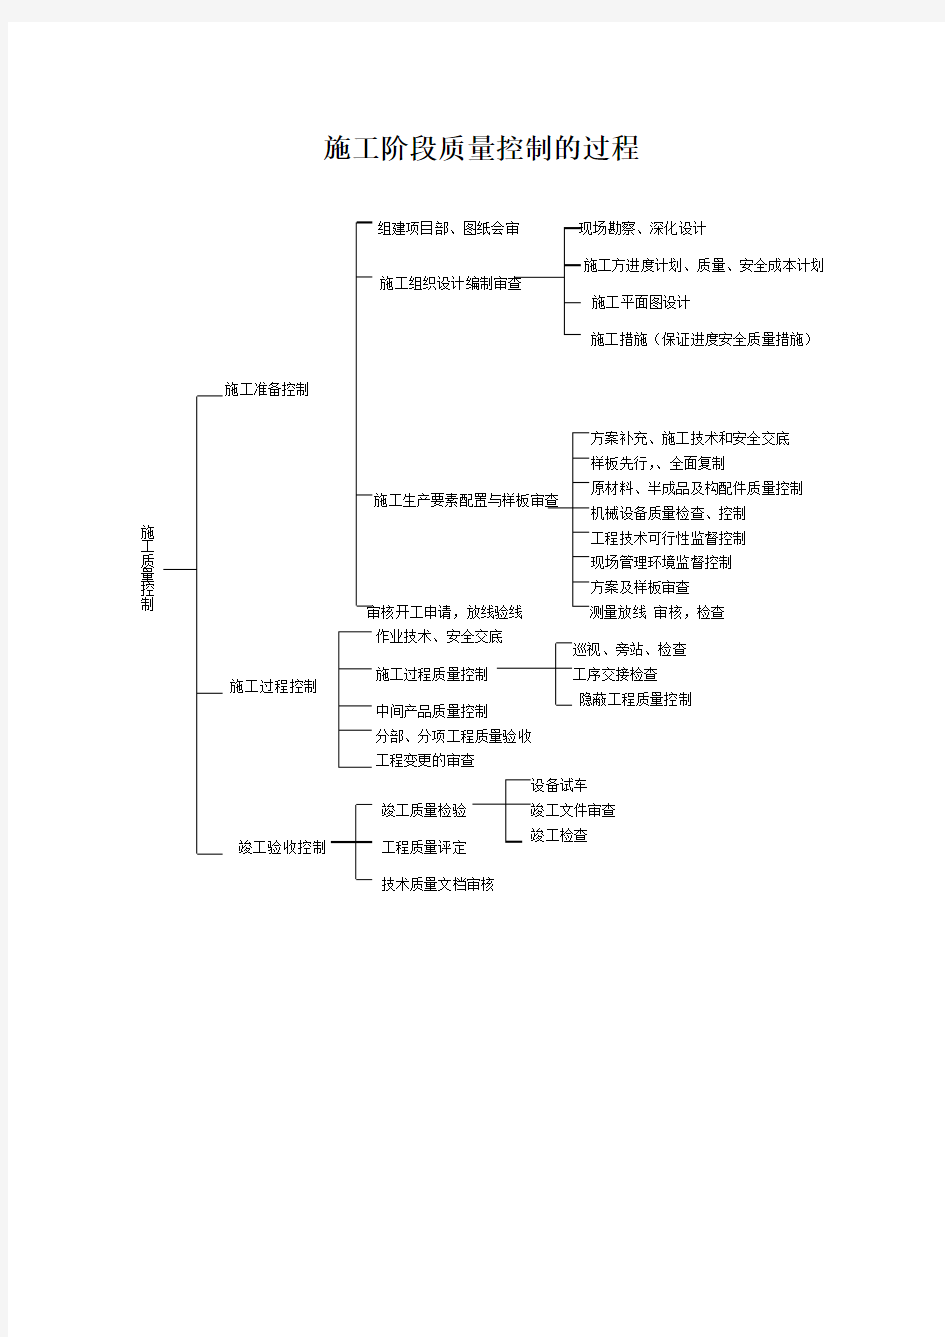 项目管理组织机构图.doc2